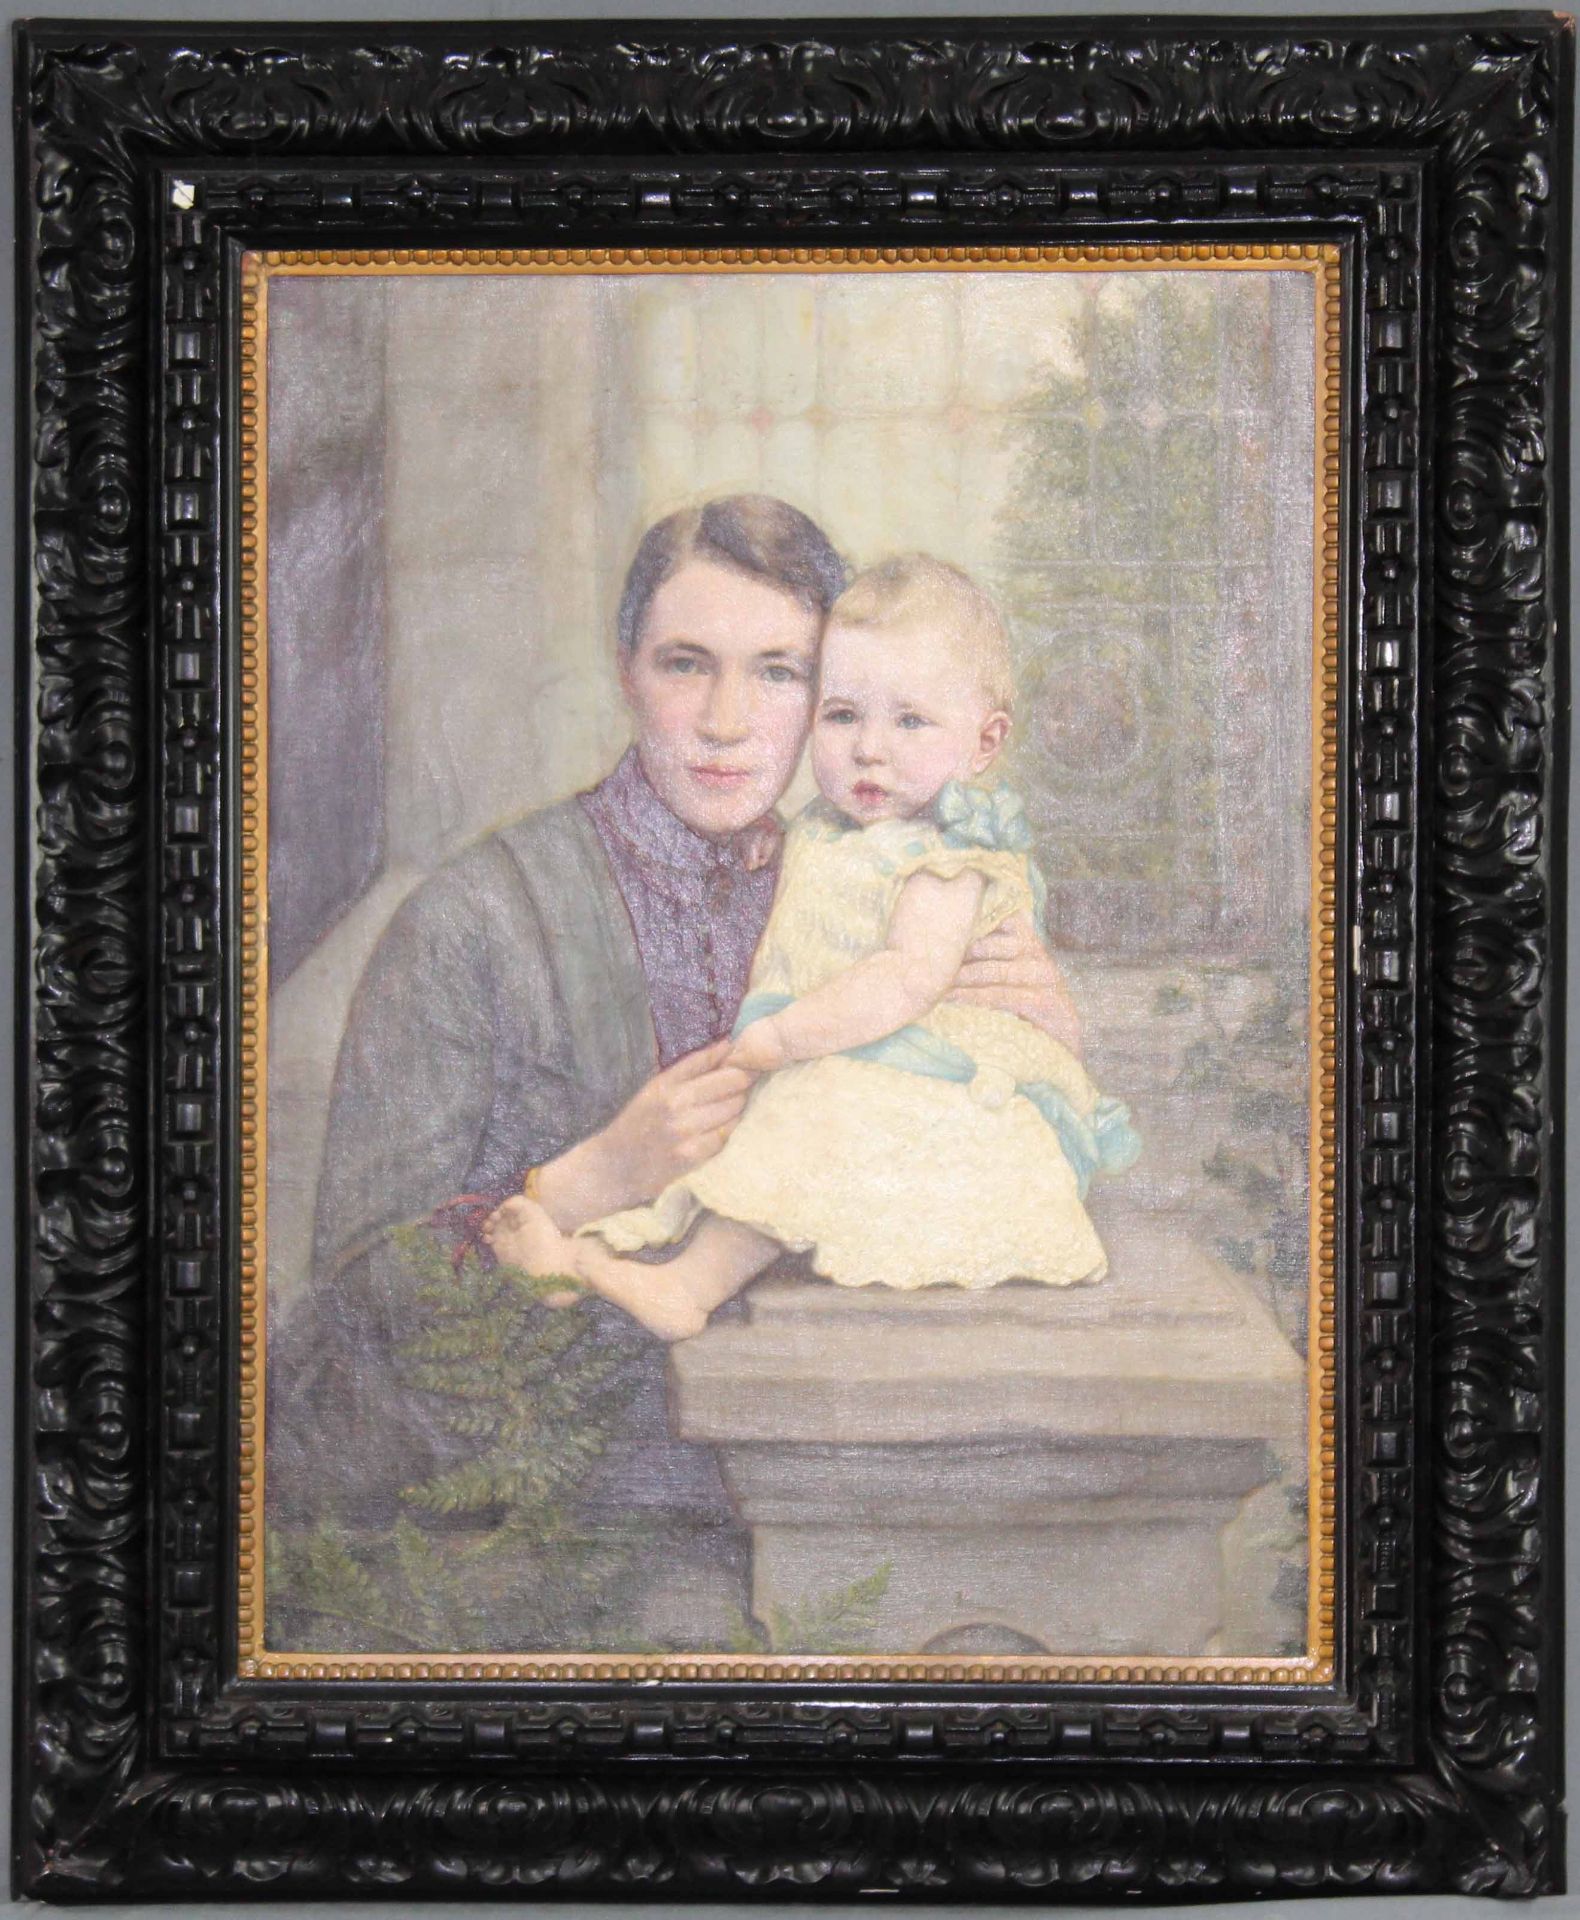 UNSIGNIERT (XIX - XX). Mutter mit Kind.73 cm x 56 cm. Gemälde. Öl auf Leinwand. Keine Signatur - Bild 2 aus 3